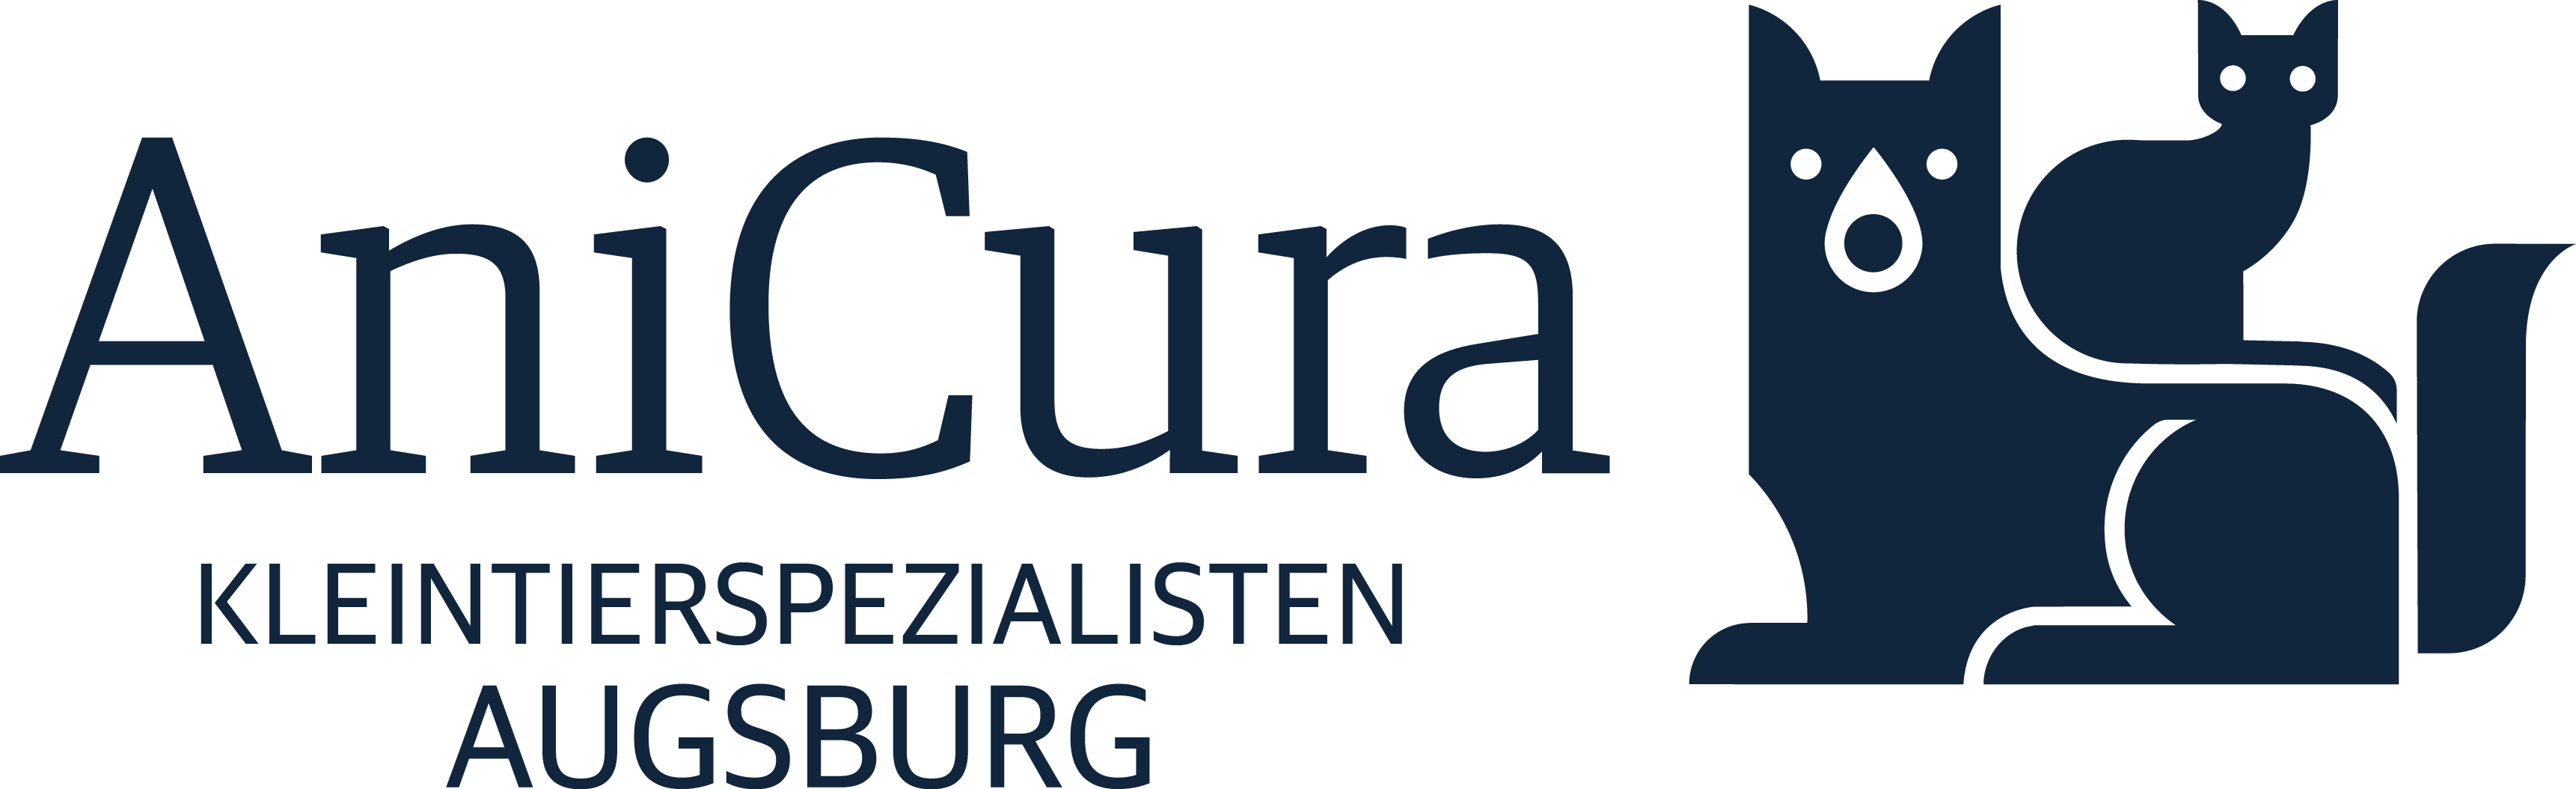 AniCura Kleintierspezialisten Augsburg logo